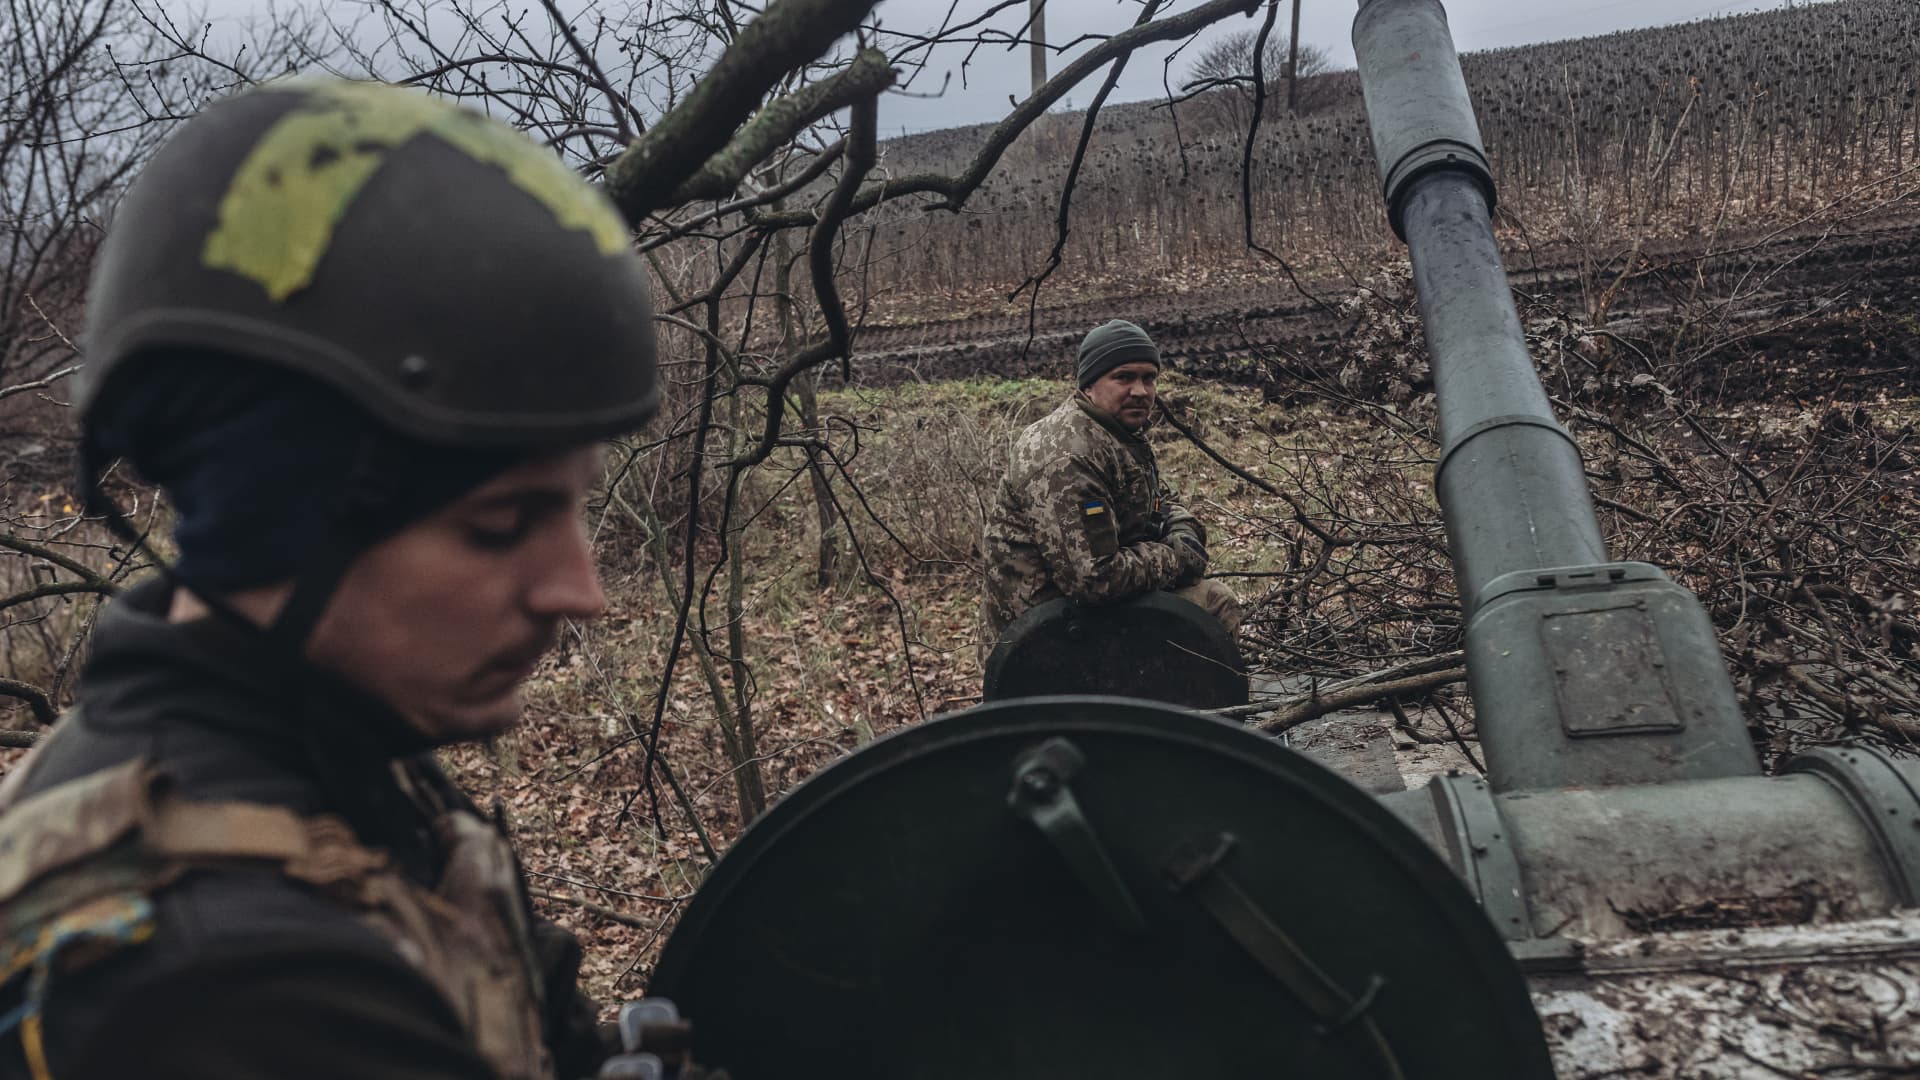 दक्षिणी यूक्रेन में रूस ‘कुछ योजना बना रहा है’, कीव ने दी चेतावनी;  डोनेट्स्क में रूसी सेनाएं आगे बढ़ सकती हैं